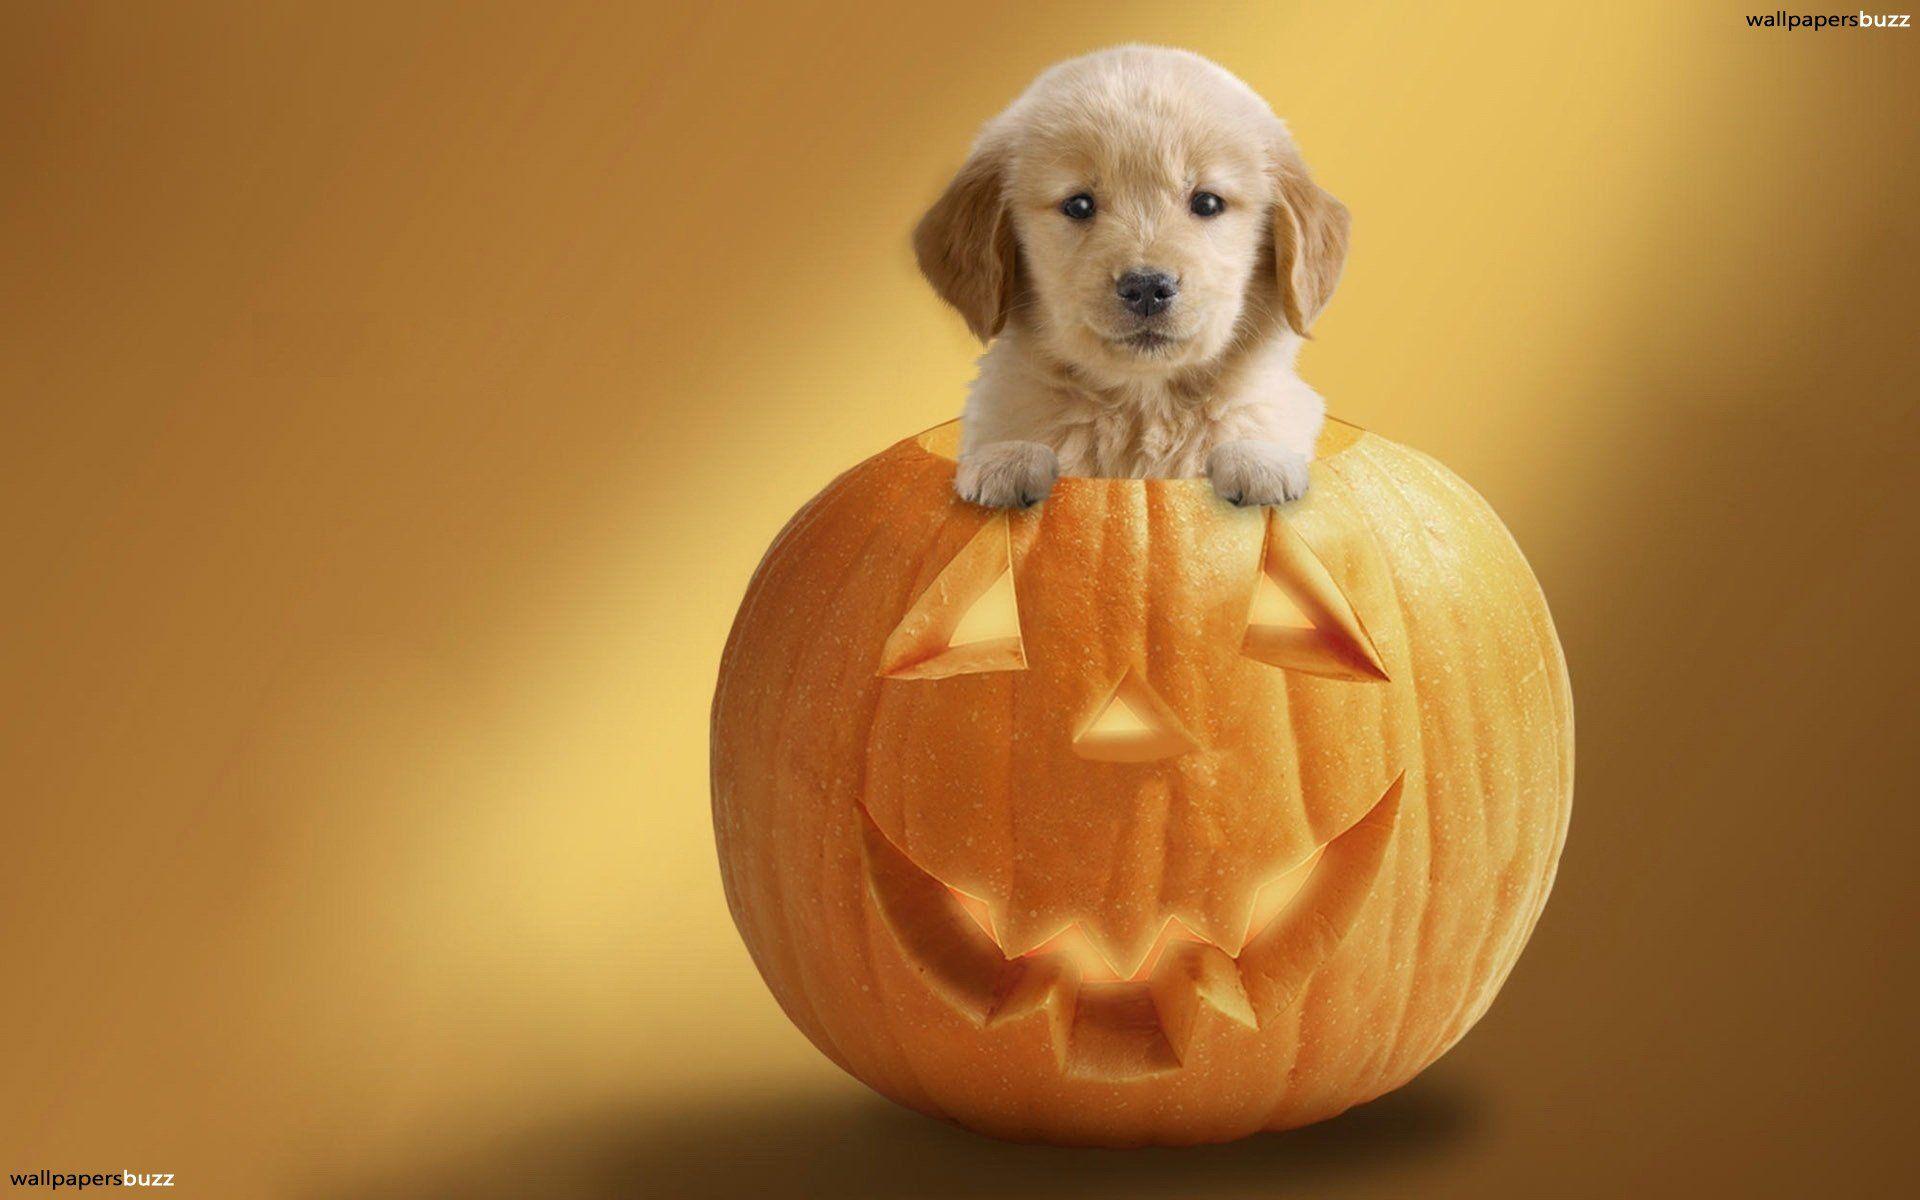 Cute puppy on a pumpkin HD Wallpaper